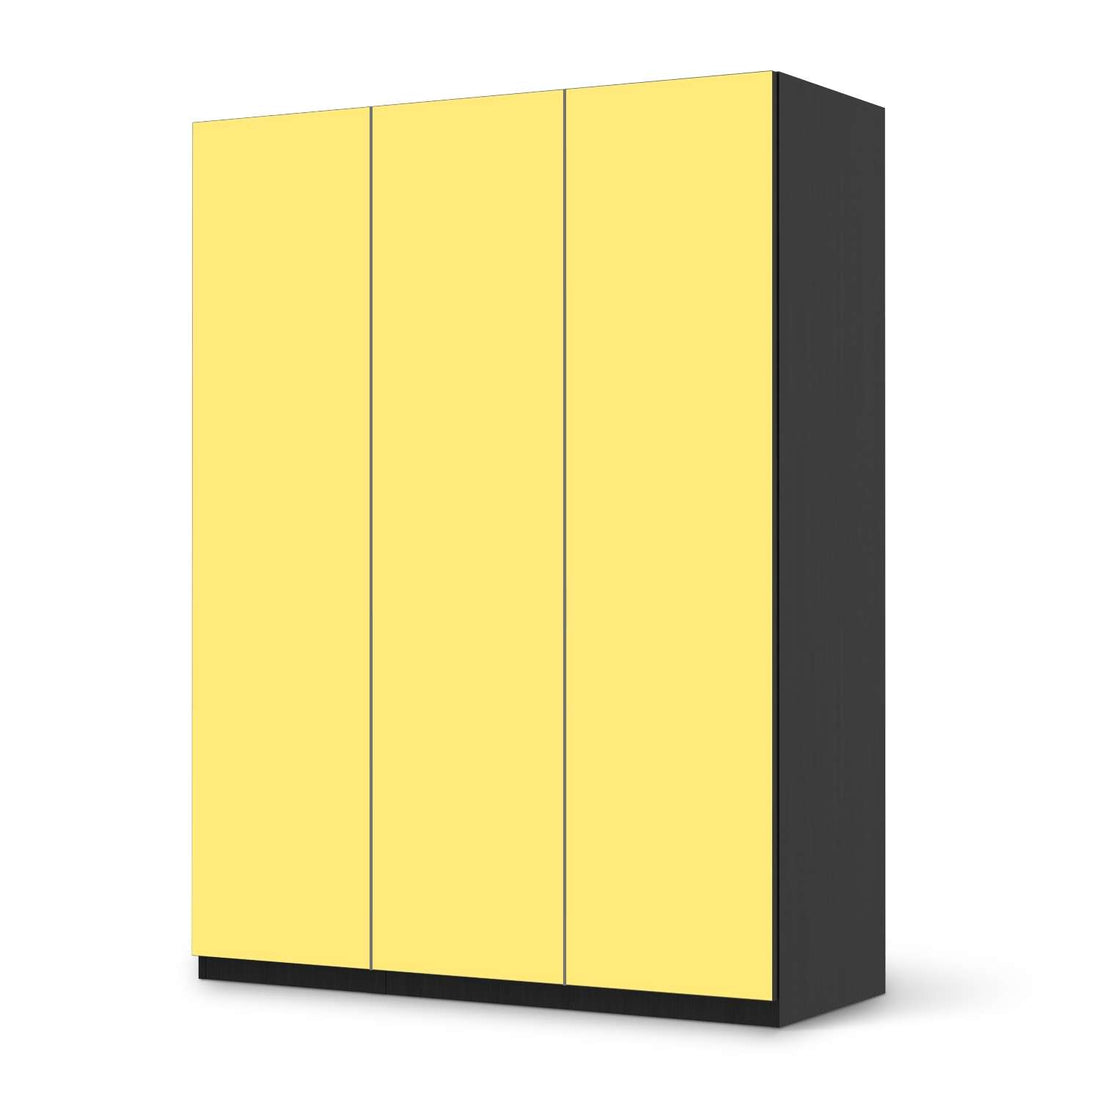 Folie für Möbel Gelb Light - IKEA Pax Schrank 201 cm Höhe - 3 Türen - schwarz